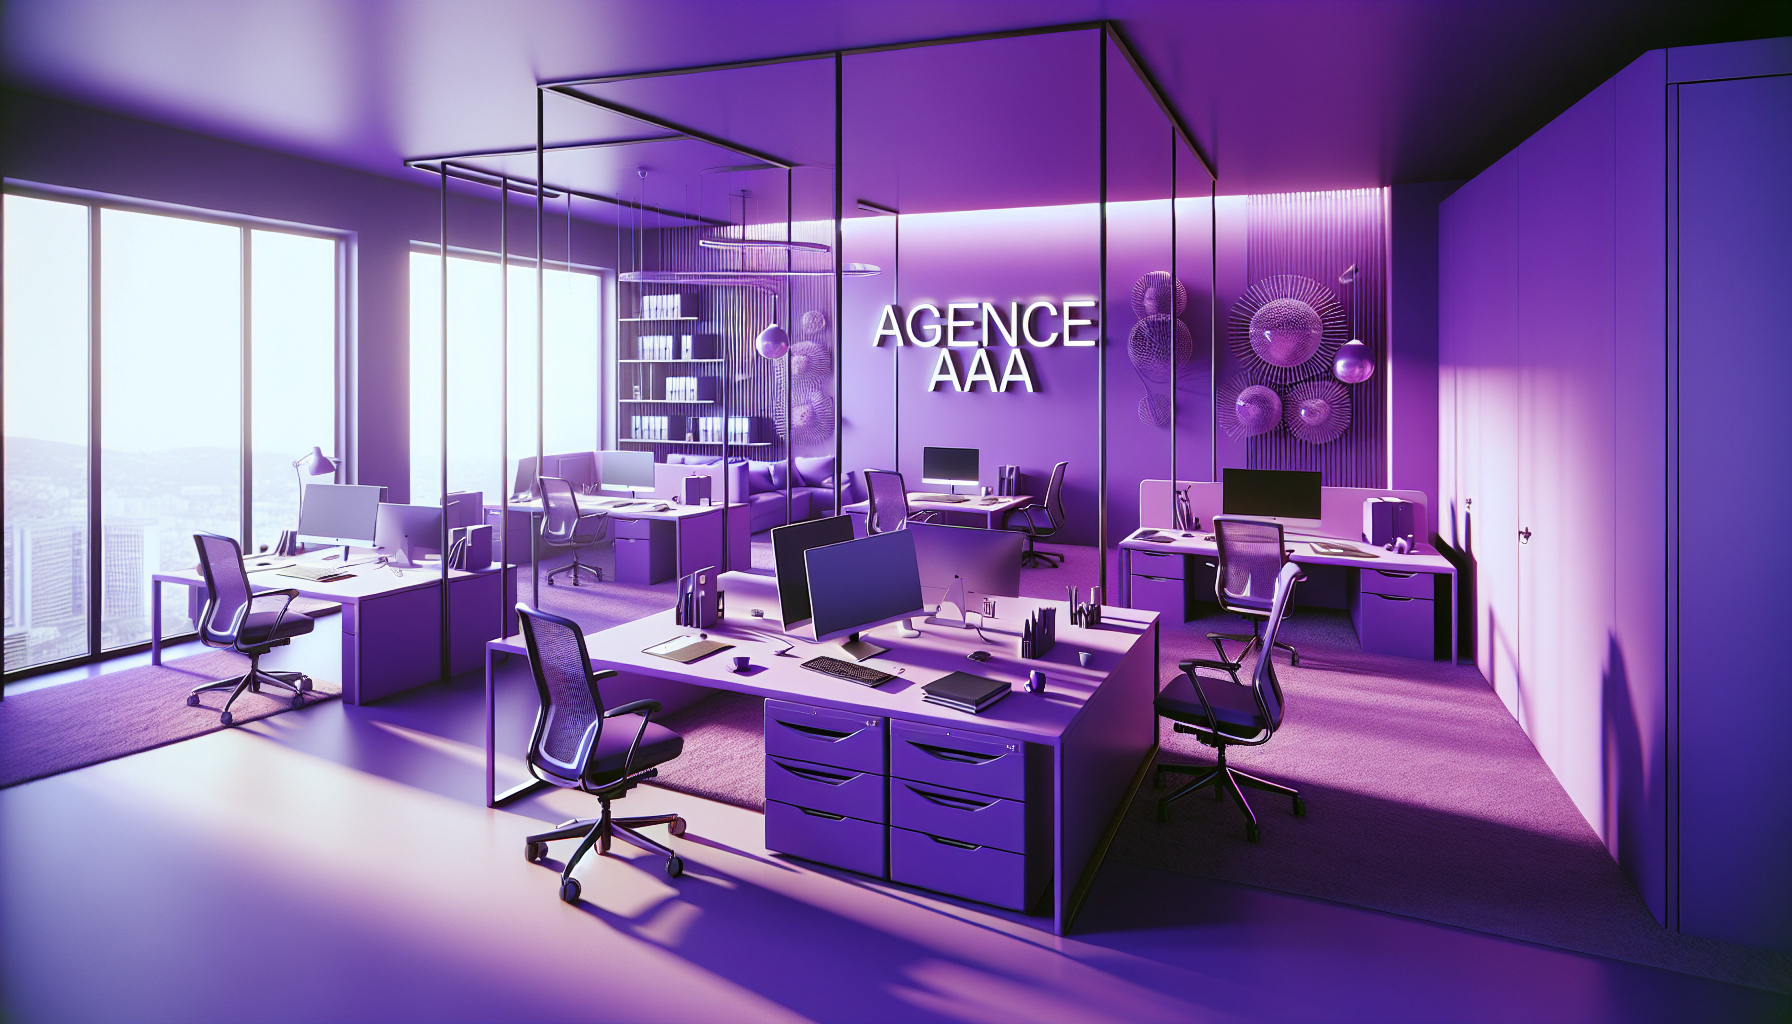 interieur bureau realiste nuances violet mobilier moderne equipements technologiques panneau agence AIAA